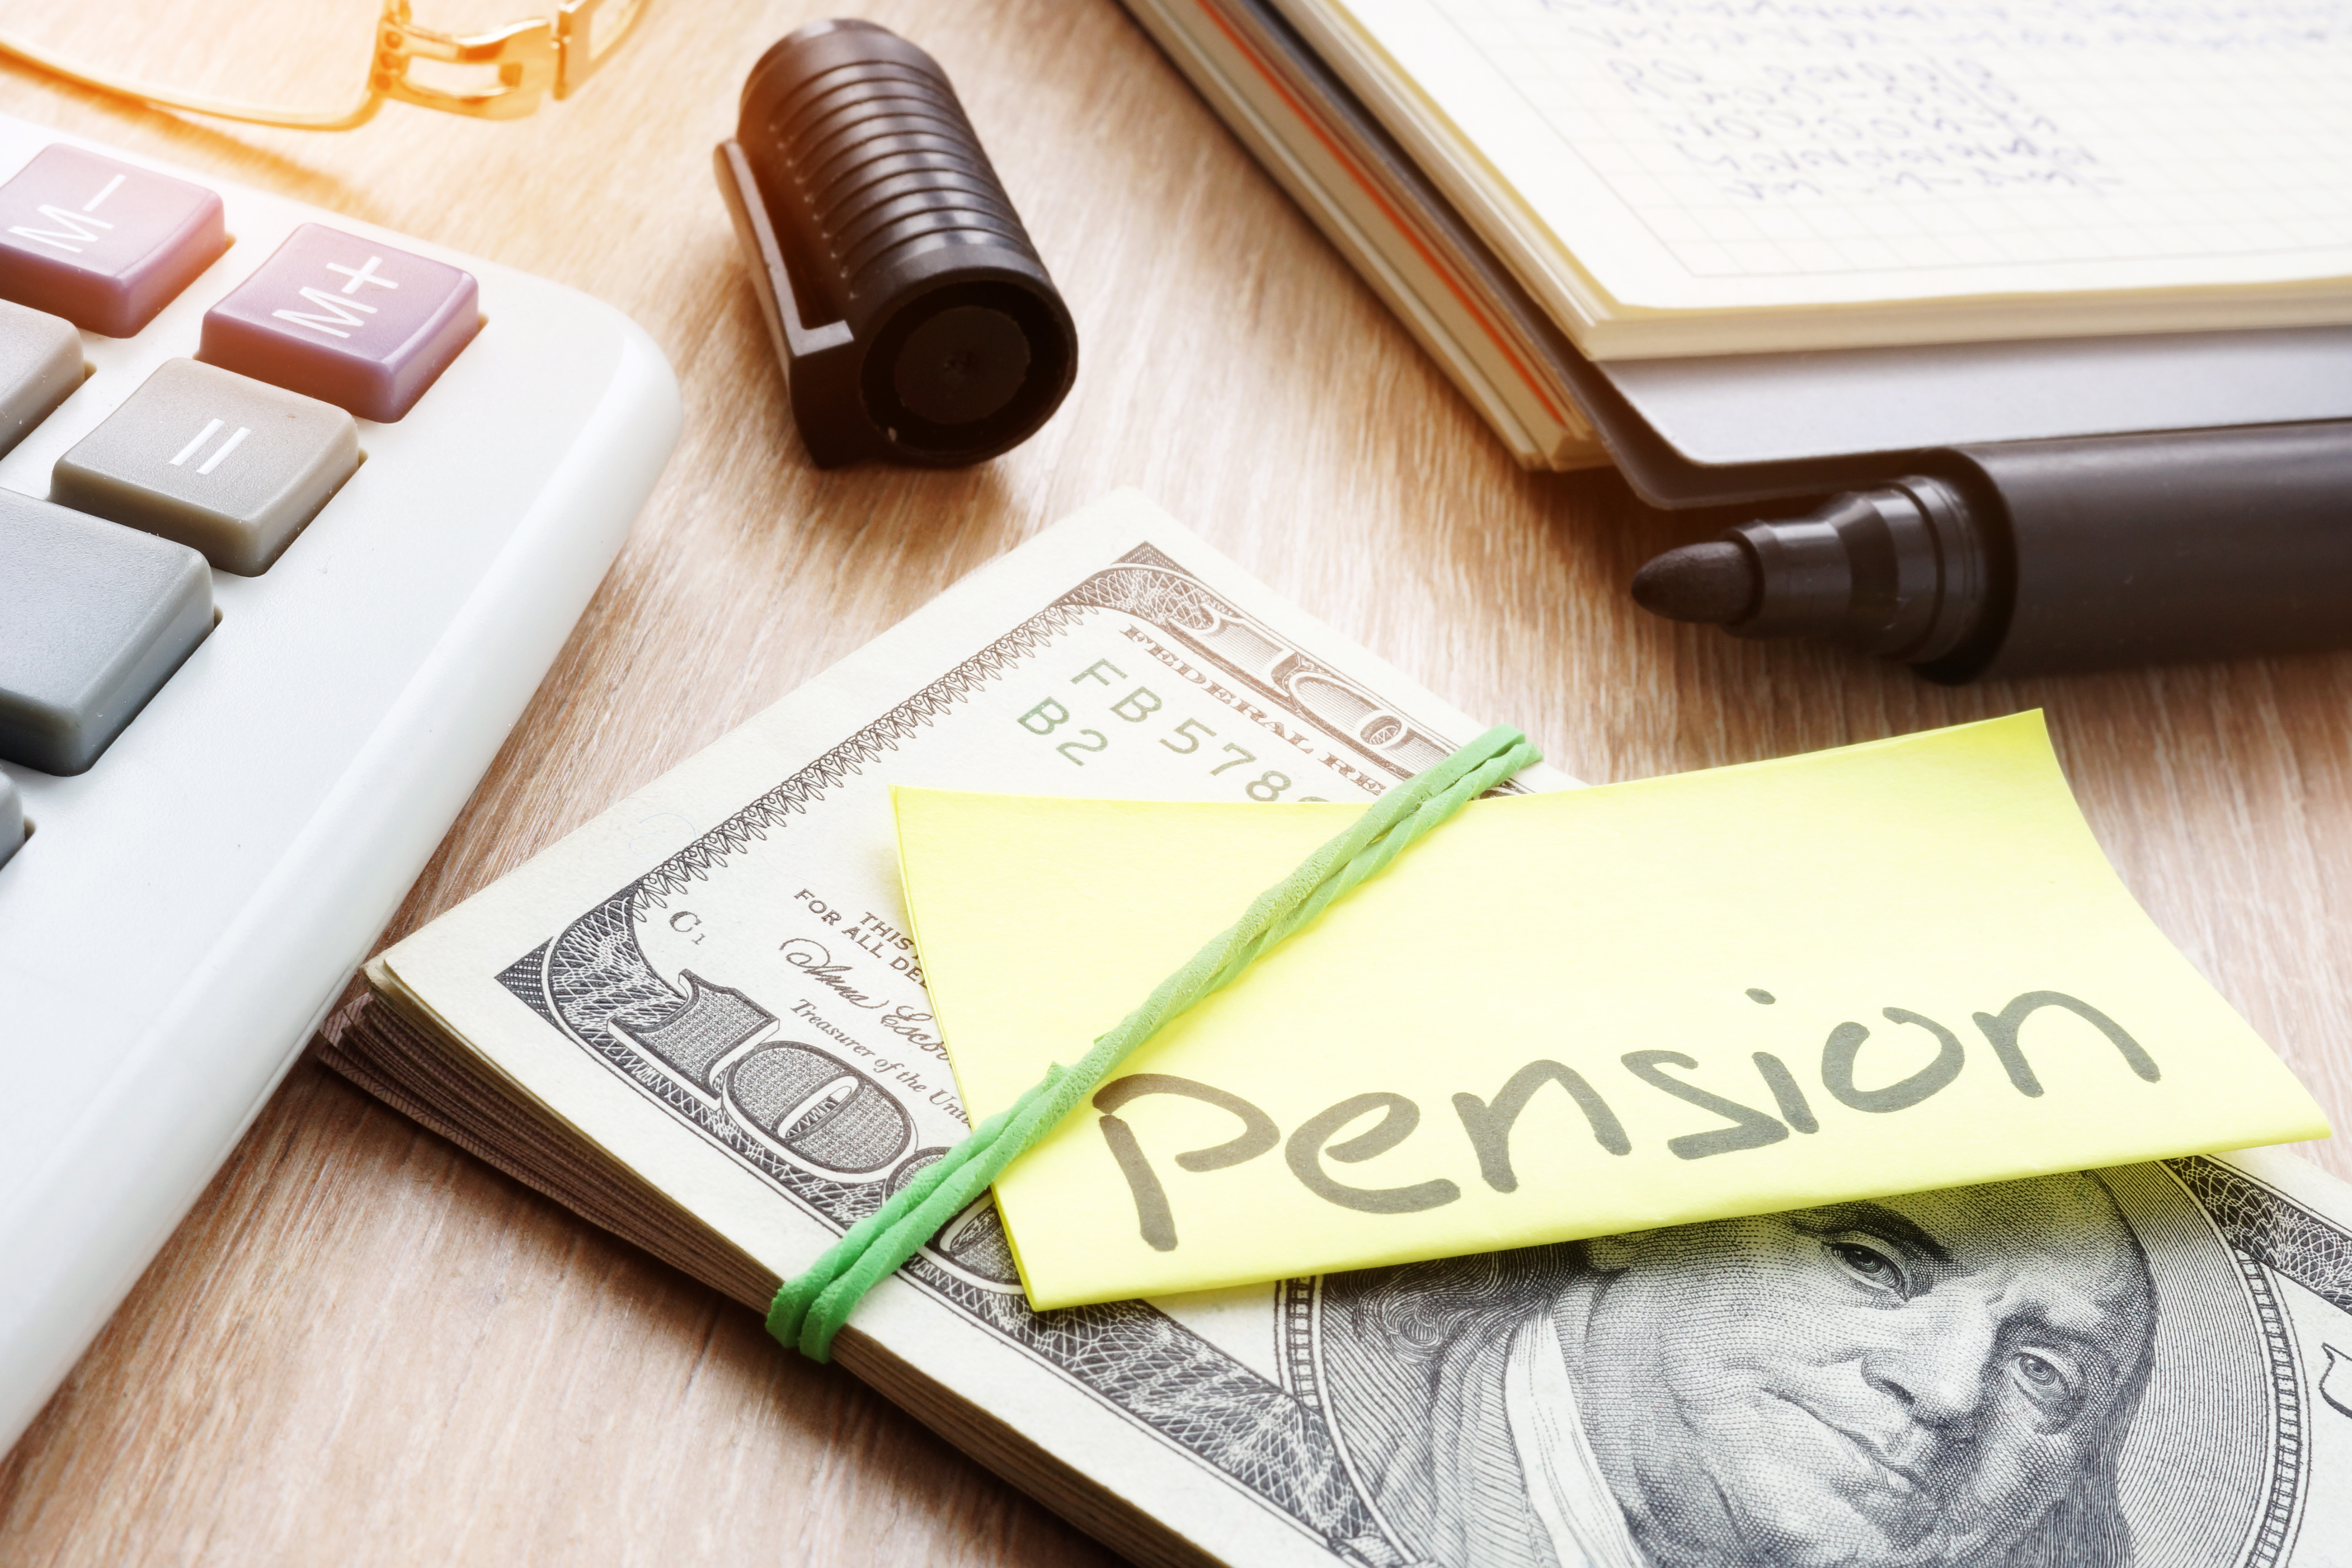 Pension Reform Newsletter — April 2019